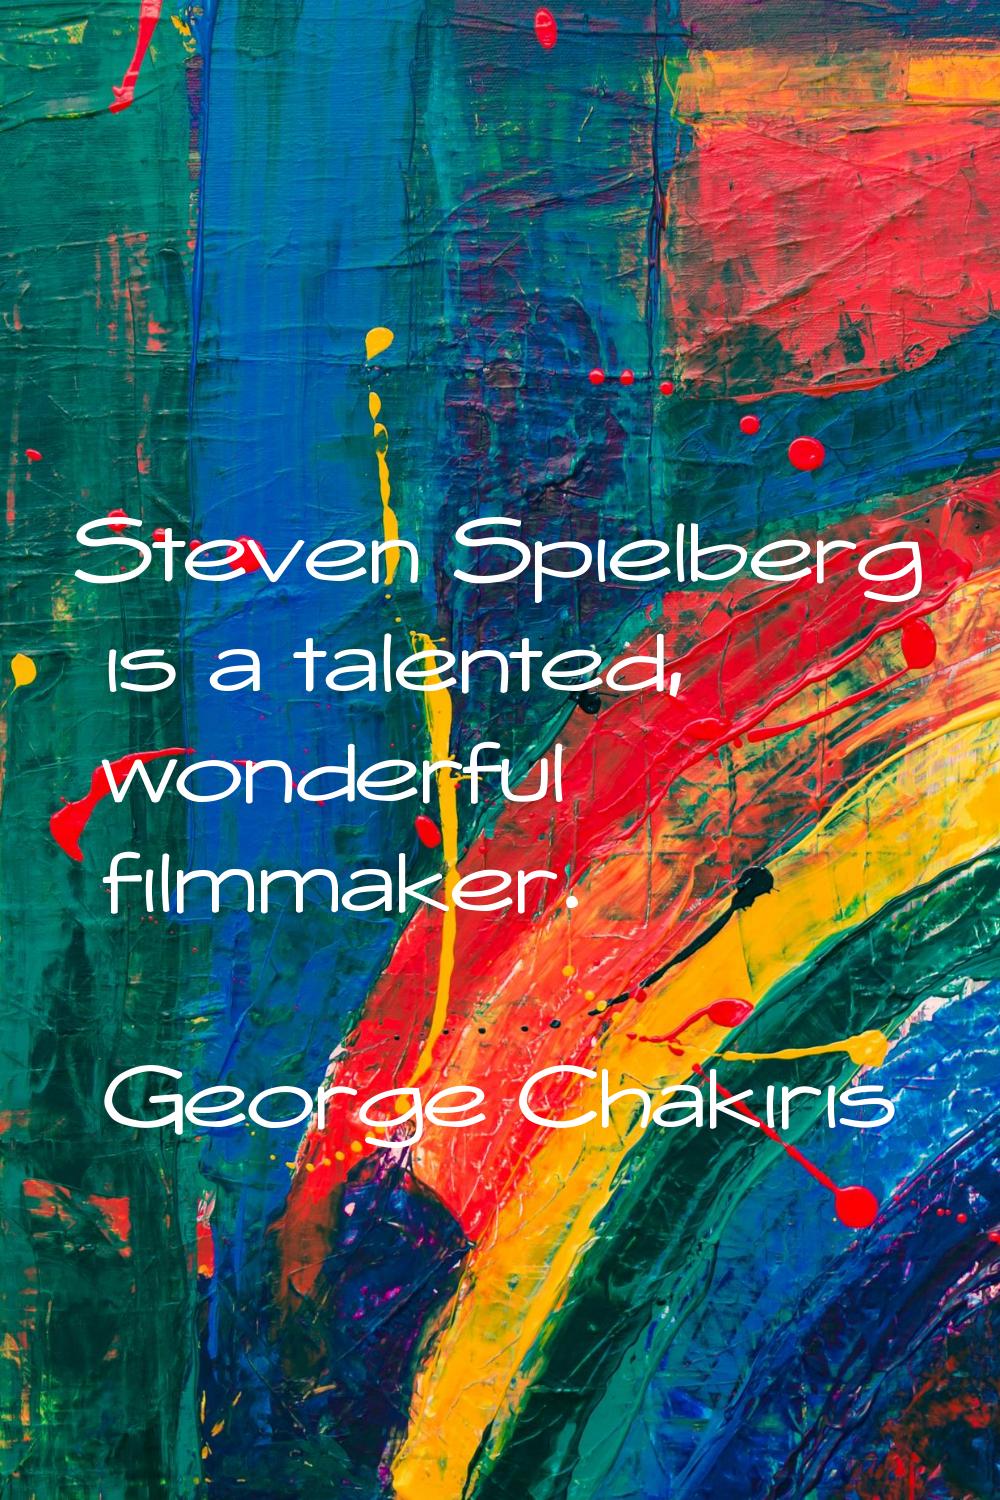 Steven Spielberg is a talented, wonderful filmmaker.